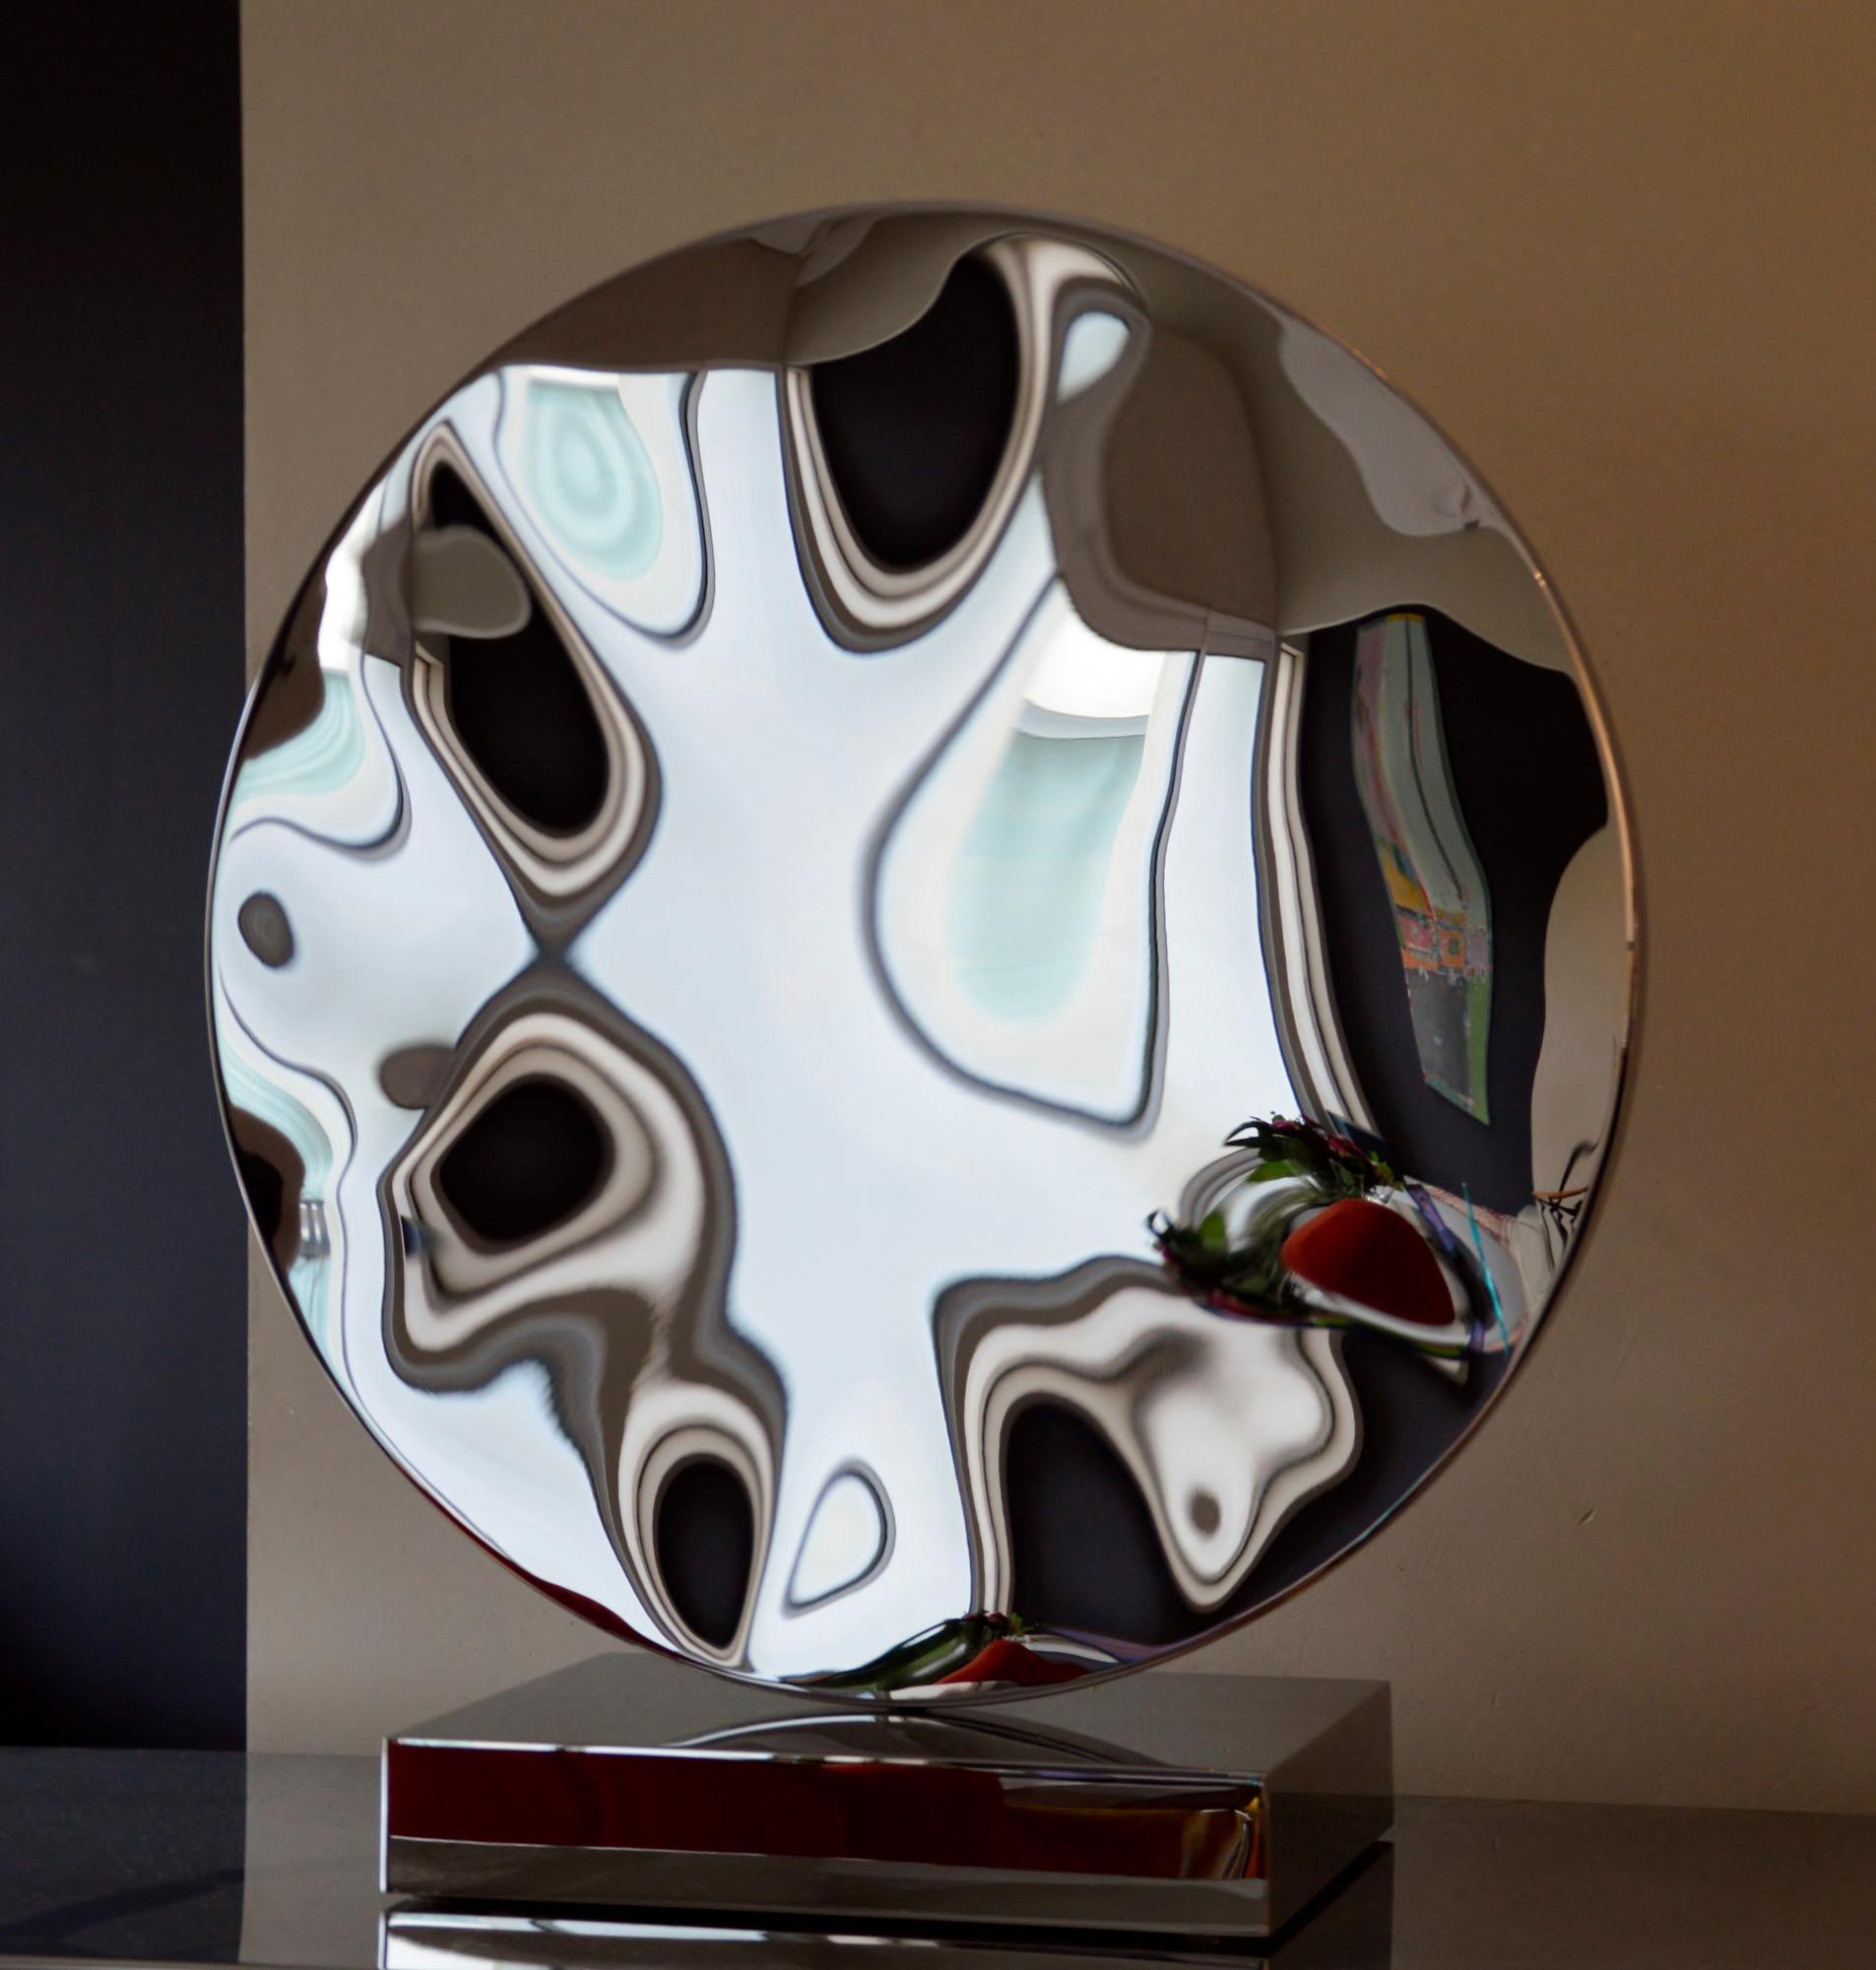 Zerbrochener Spiegel I von Franck K - Skulptur aus rostfreiem Stahl, Reflexion, Licht